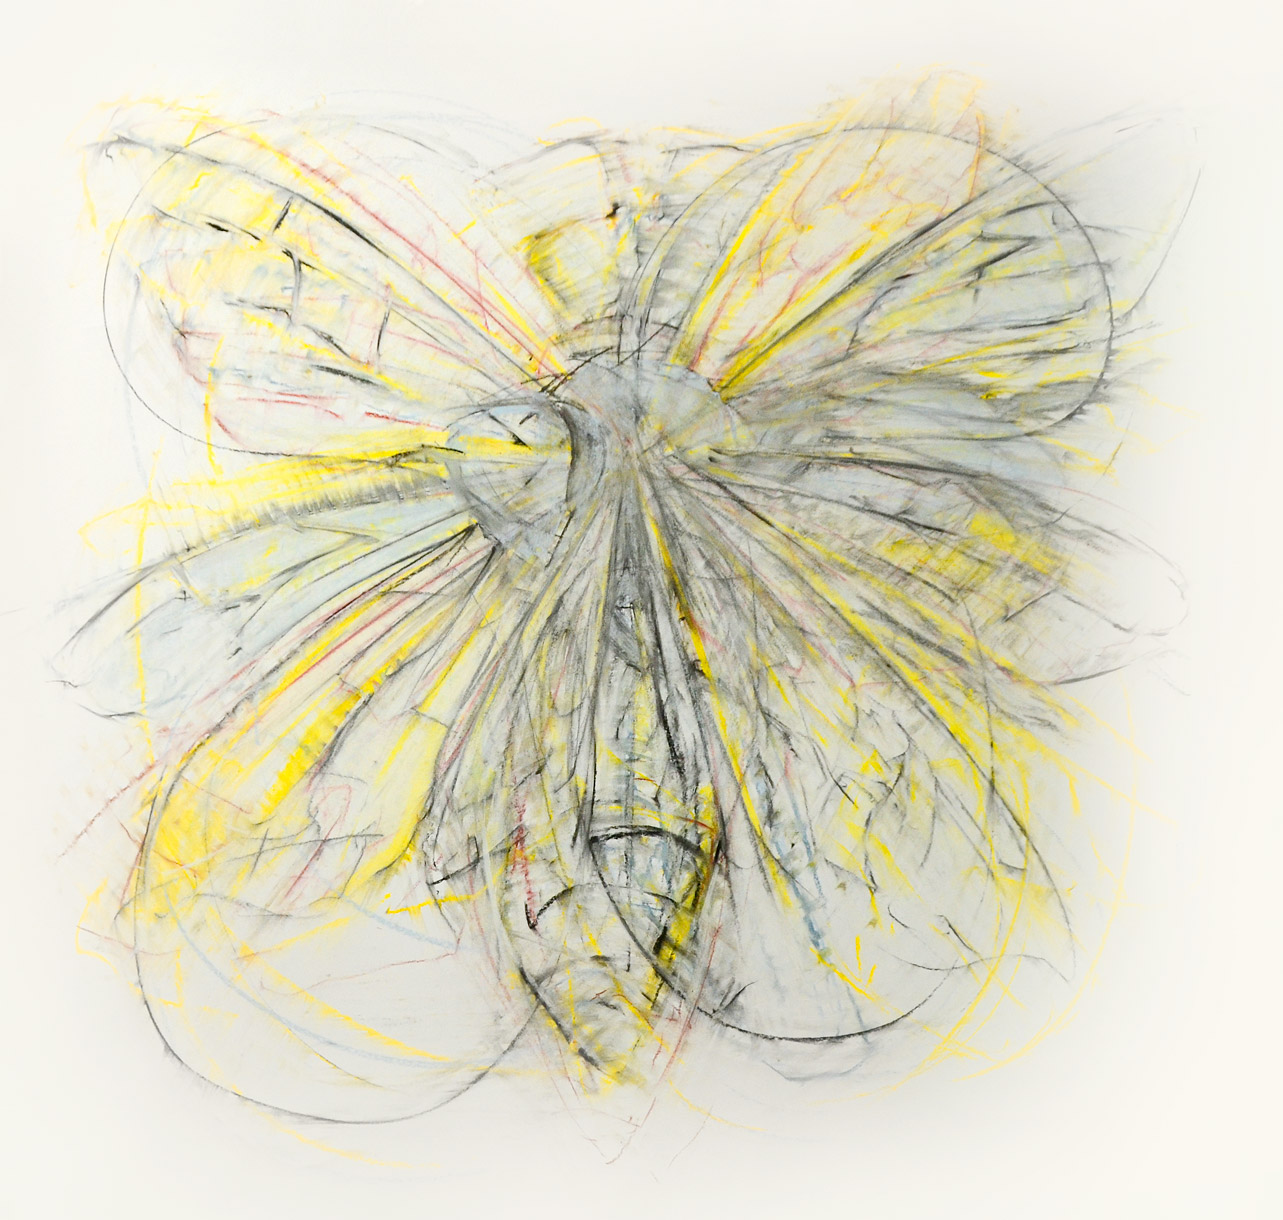 Jeanette Zippel, Flug-002, 2020, Kohle, Rötel, Pastell auf Papier, 140 x 130 cm, Preis auf Anfrage, SüdWestGalerie